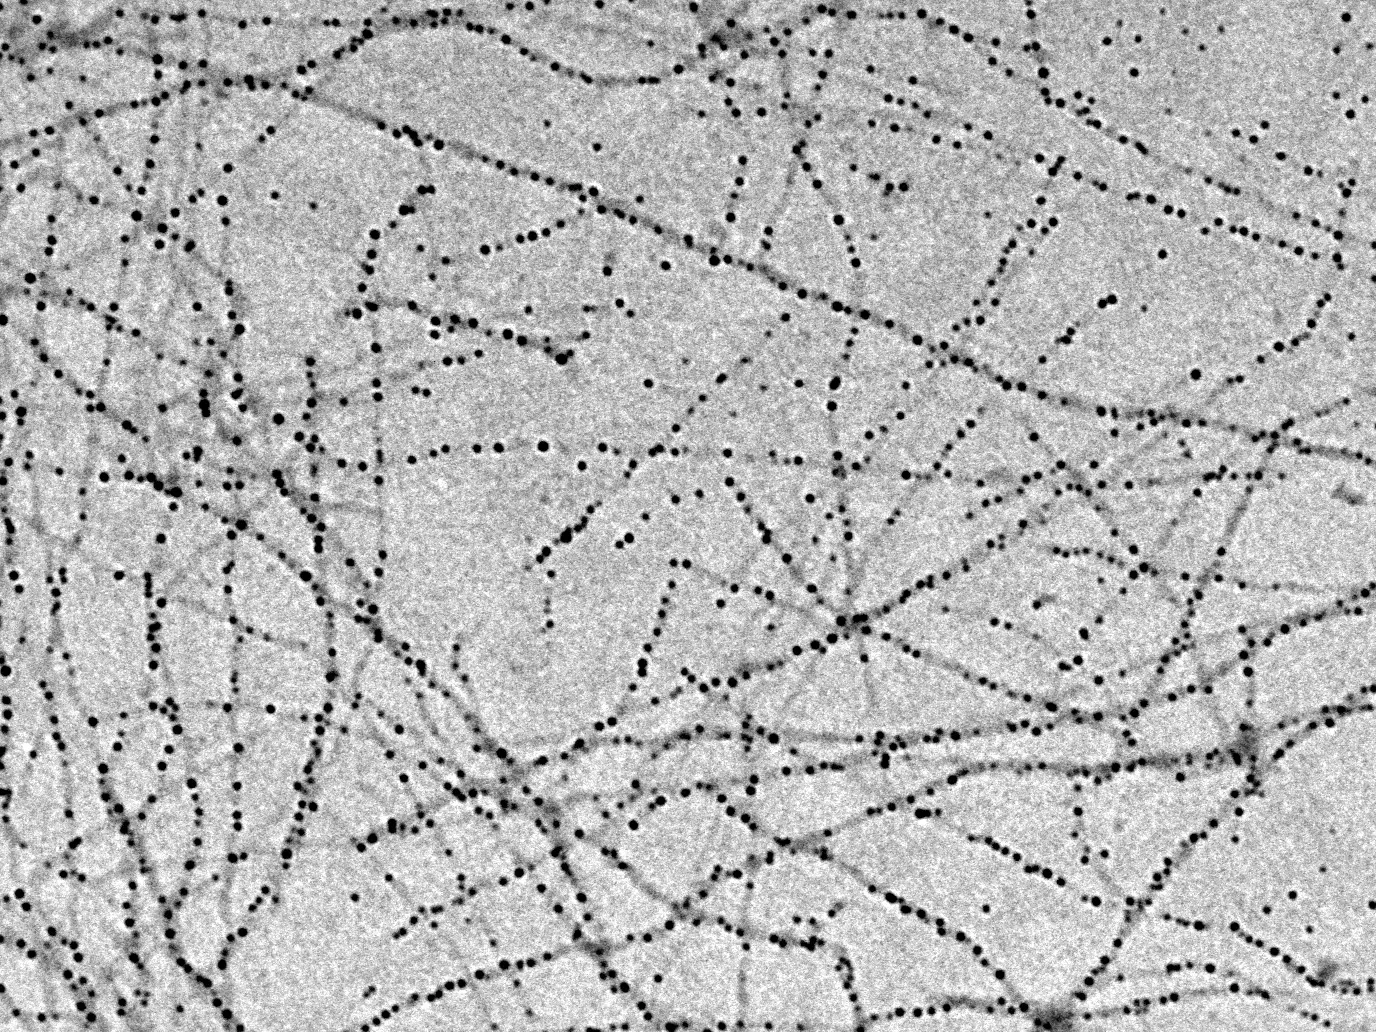 Bild von Nanofasern aus Milchprotein, auf denen sich Eisen-Nanopartikel angesammelt haben, aufgenommen mit einem Transmissionsel